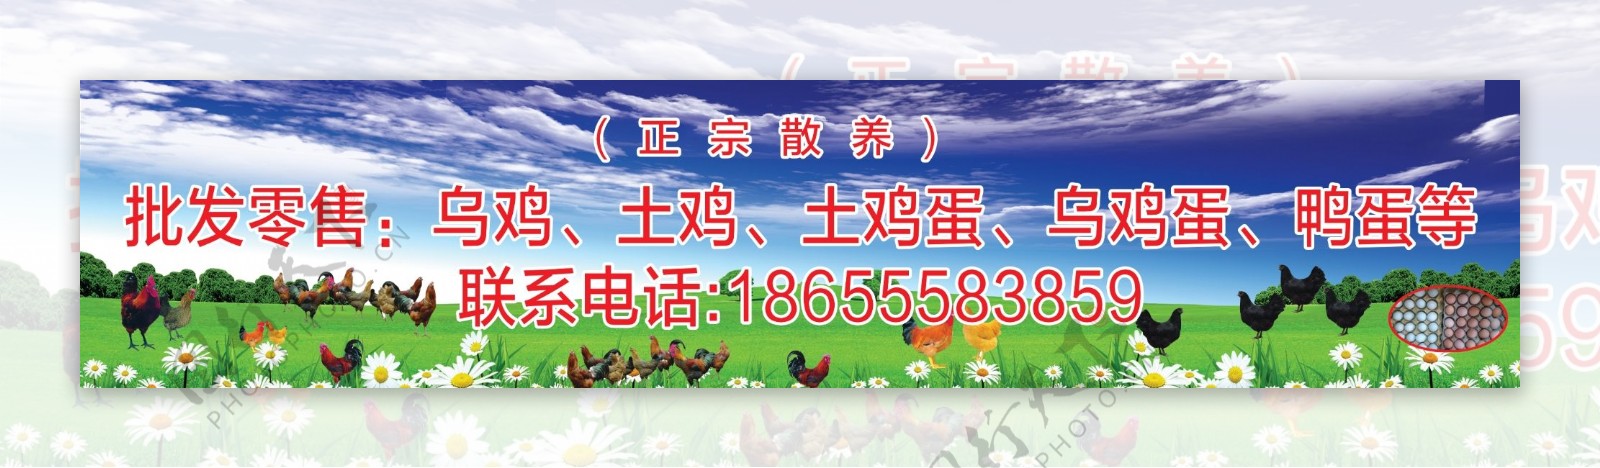 农场养鸡场宣传画面